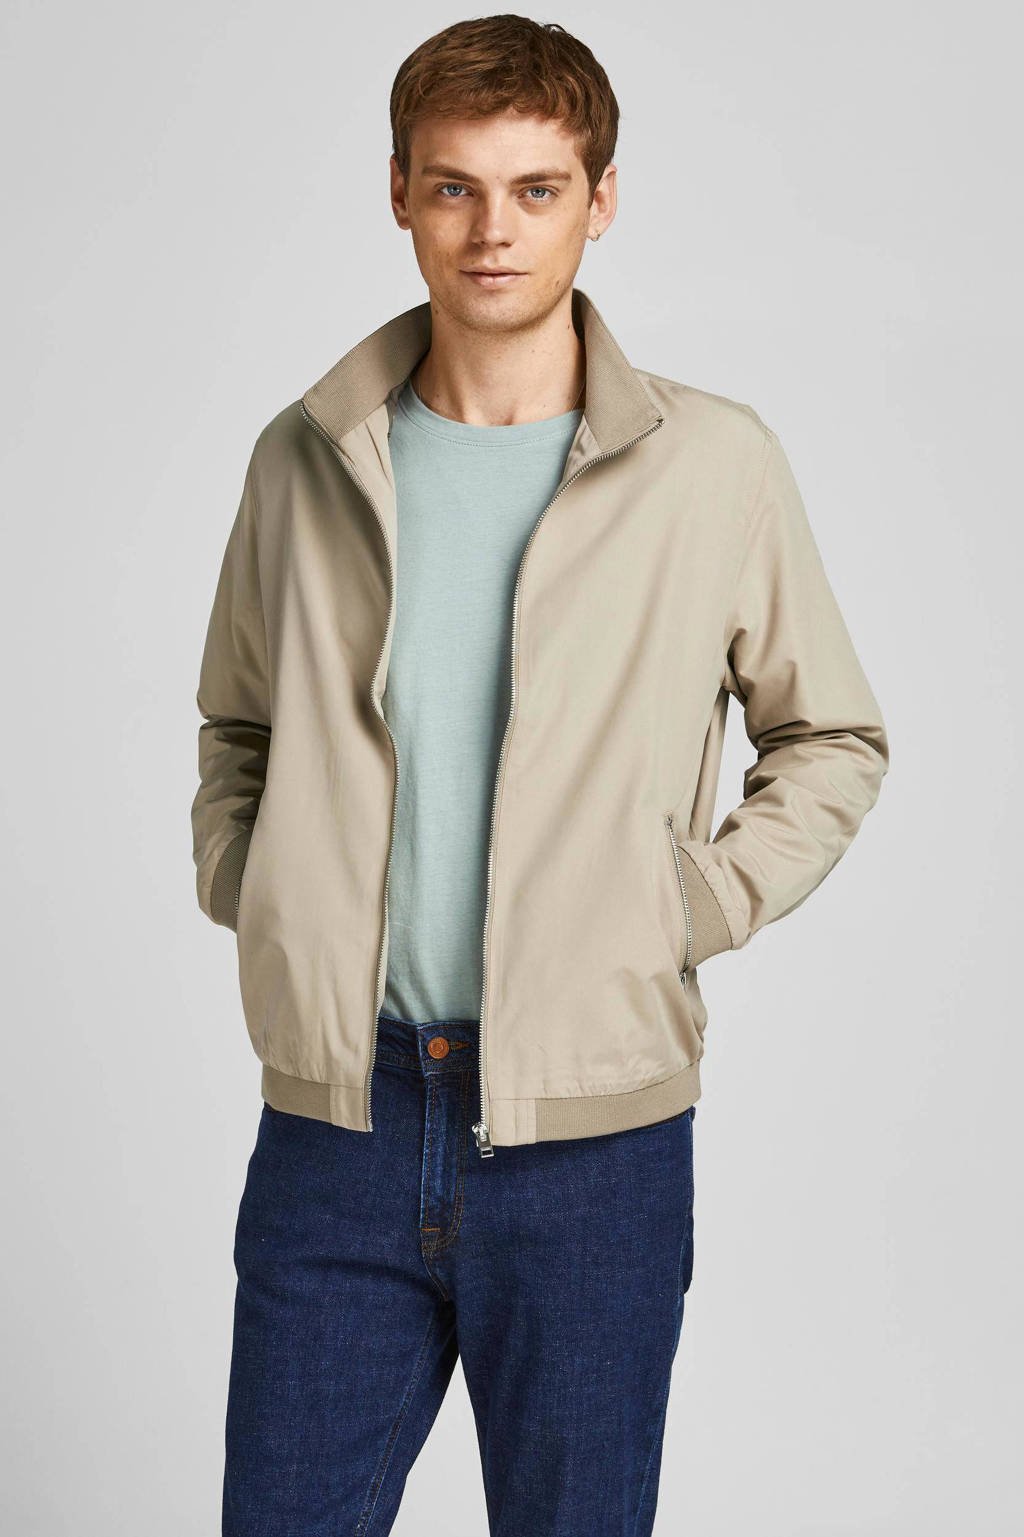 Buy Polo Ralph Lauren Bayport Cotton Jacket, LuxuryTan, L at